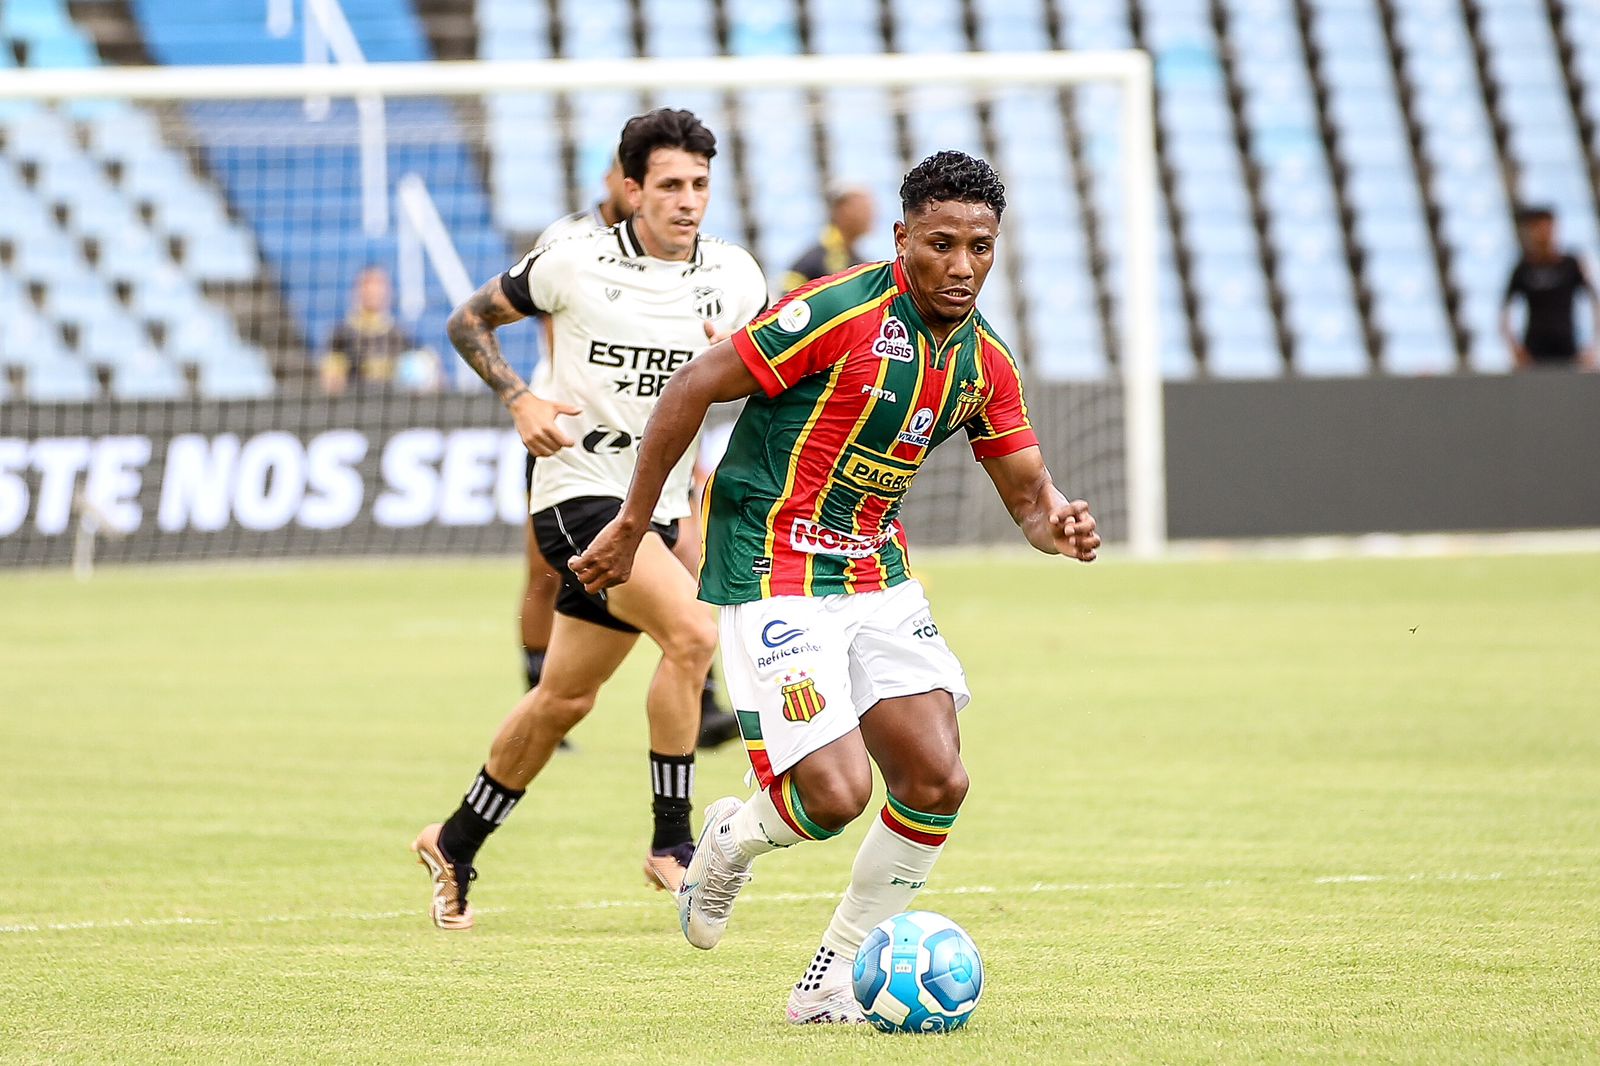 Sampaio Corrêa e Ceará empataram em 1 a 1 (Foto: Ronald Felipe/Sampaio Corrêa)